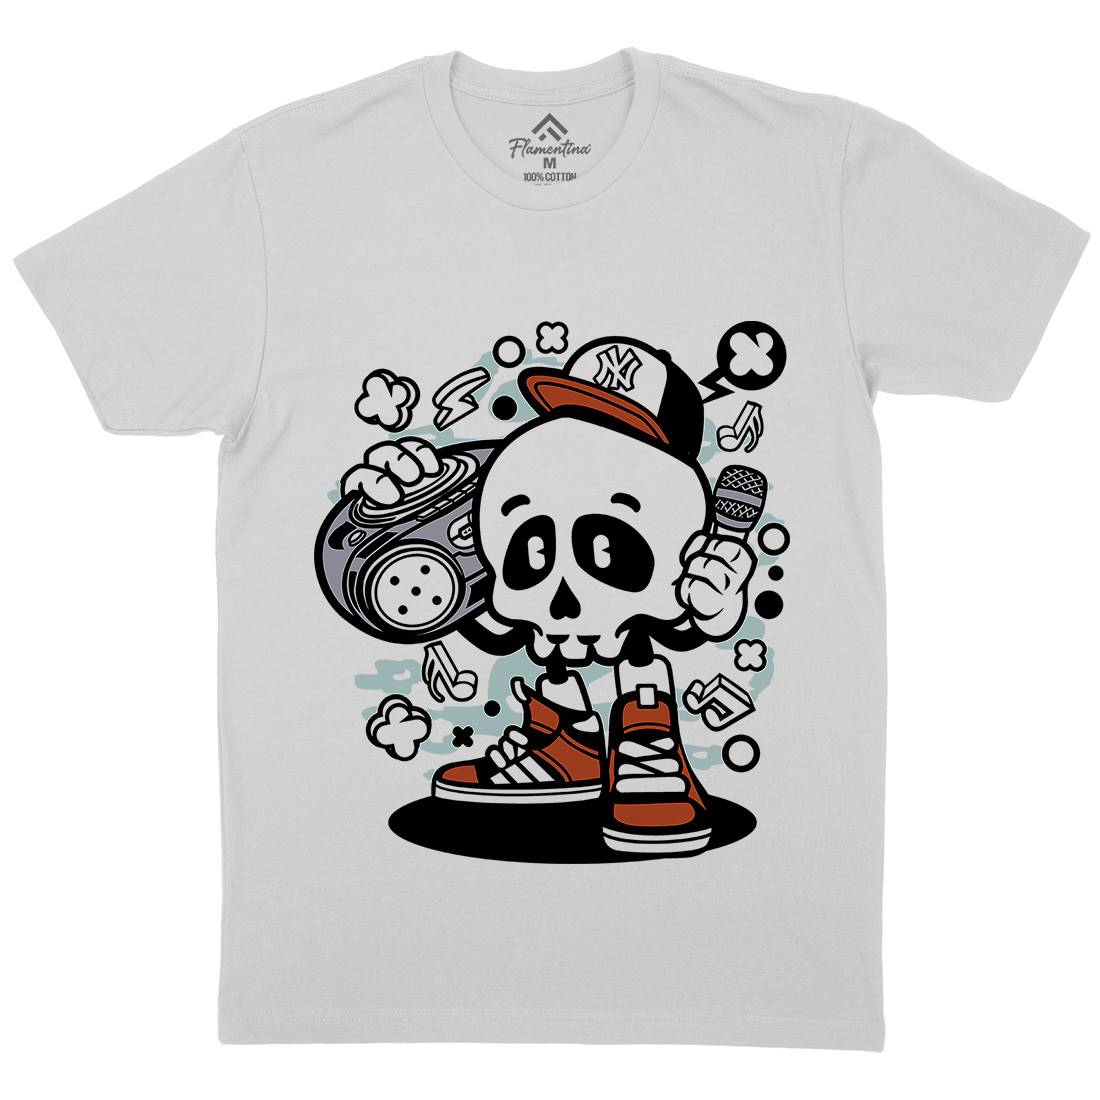 Boombox Skull Mens Crew Neck T-Shirt Music C029